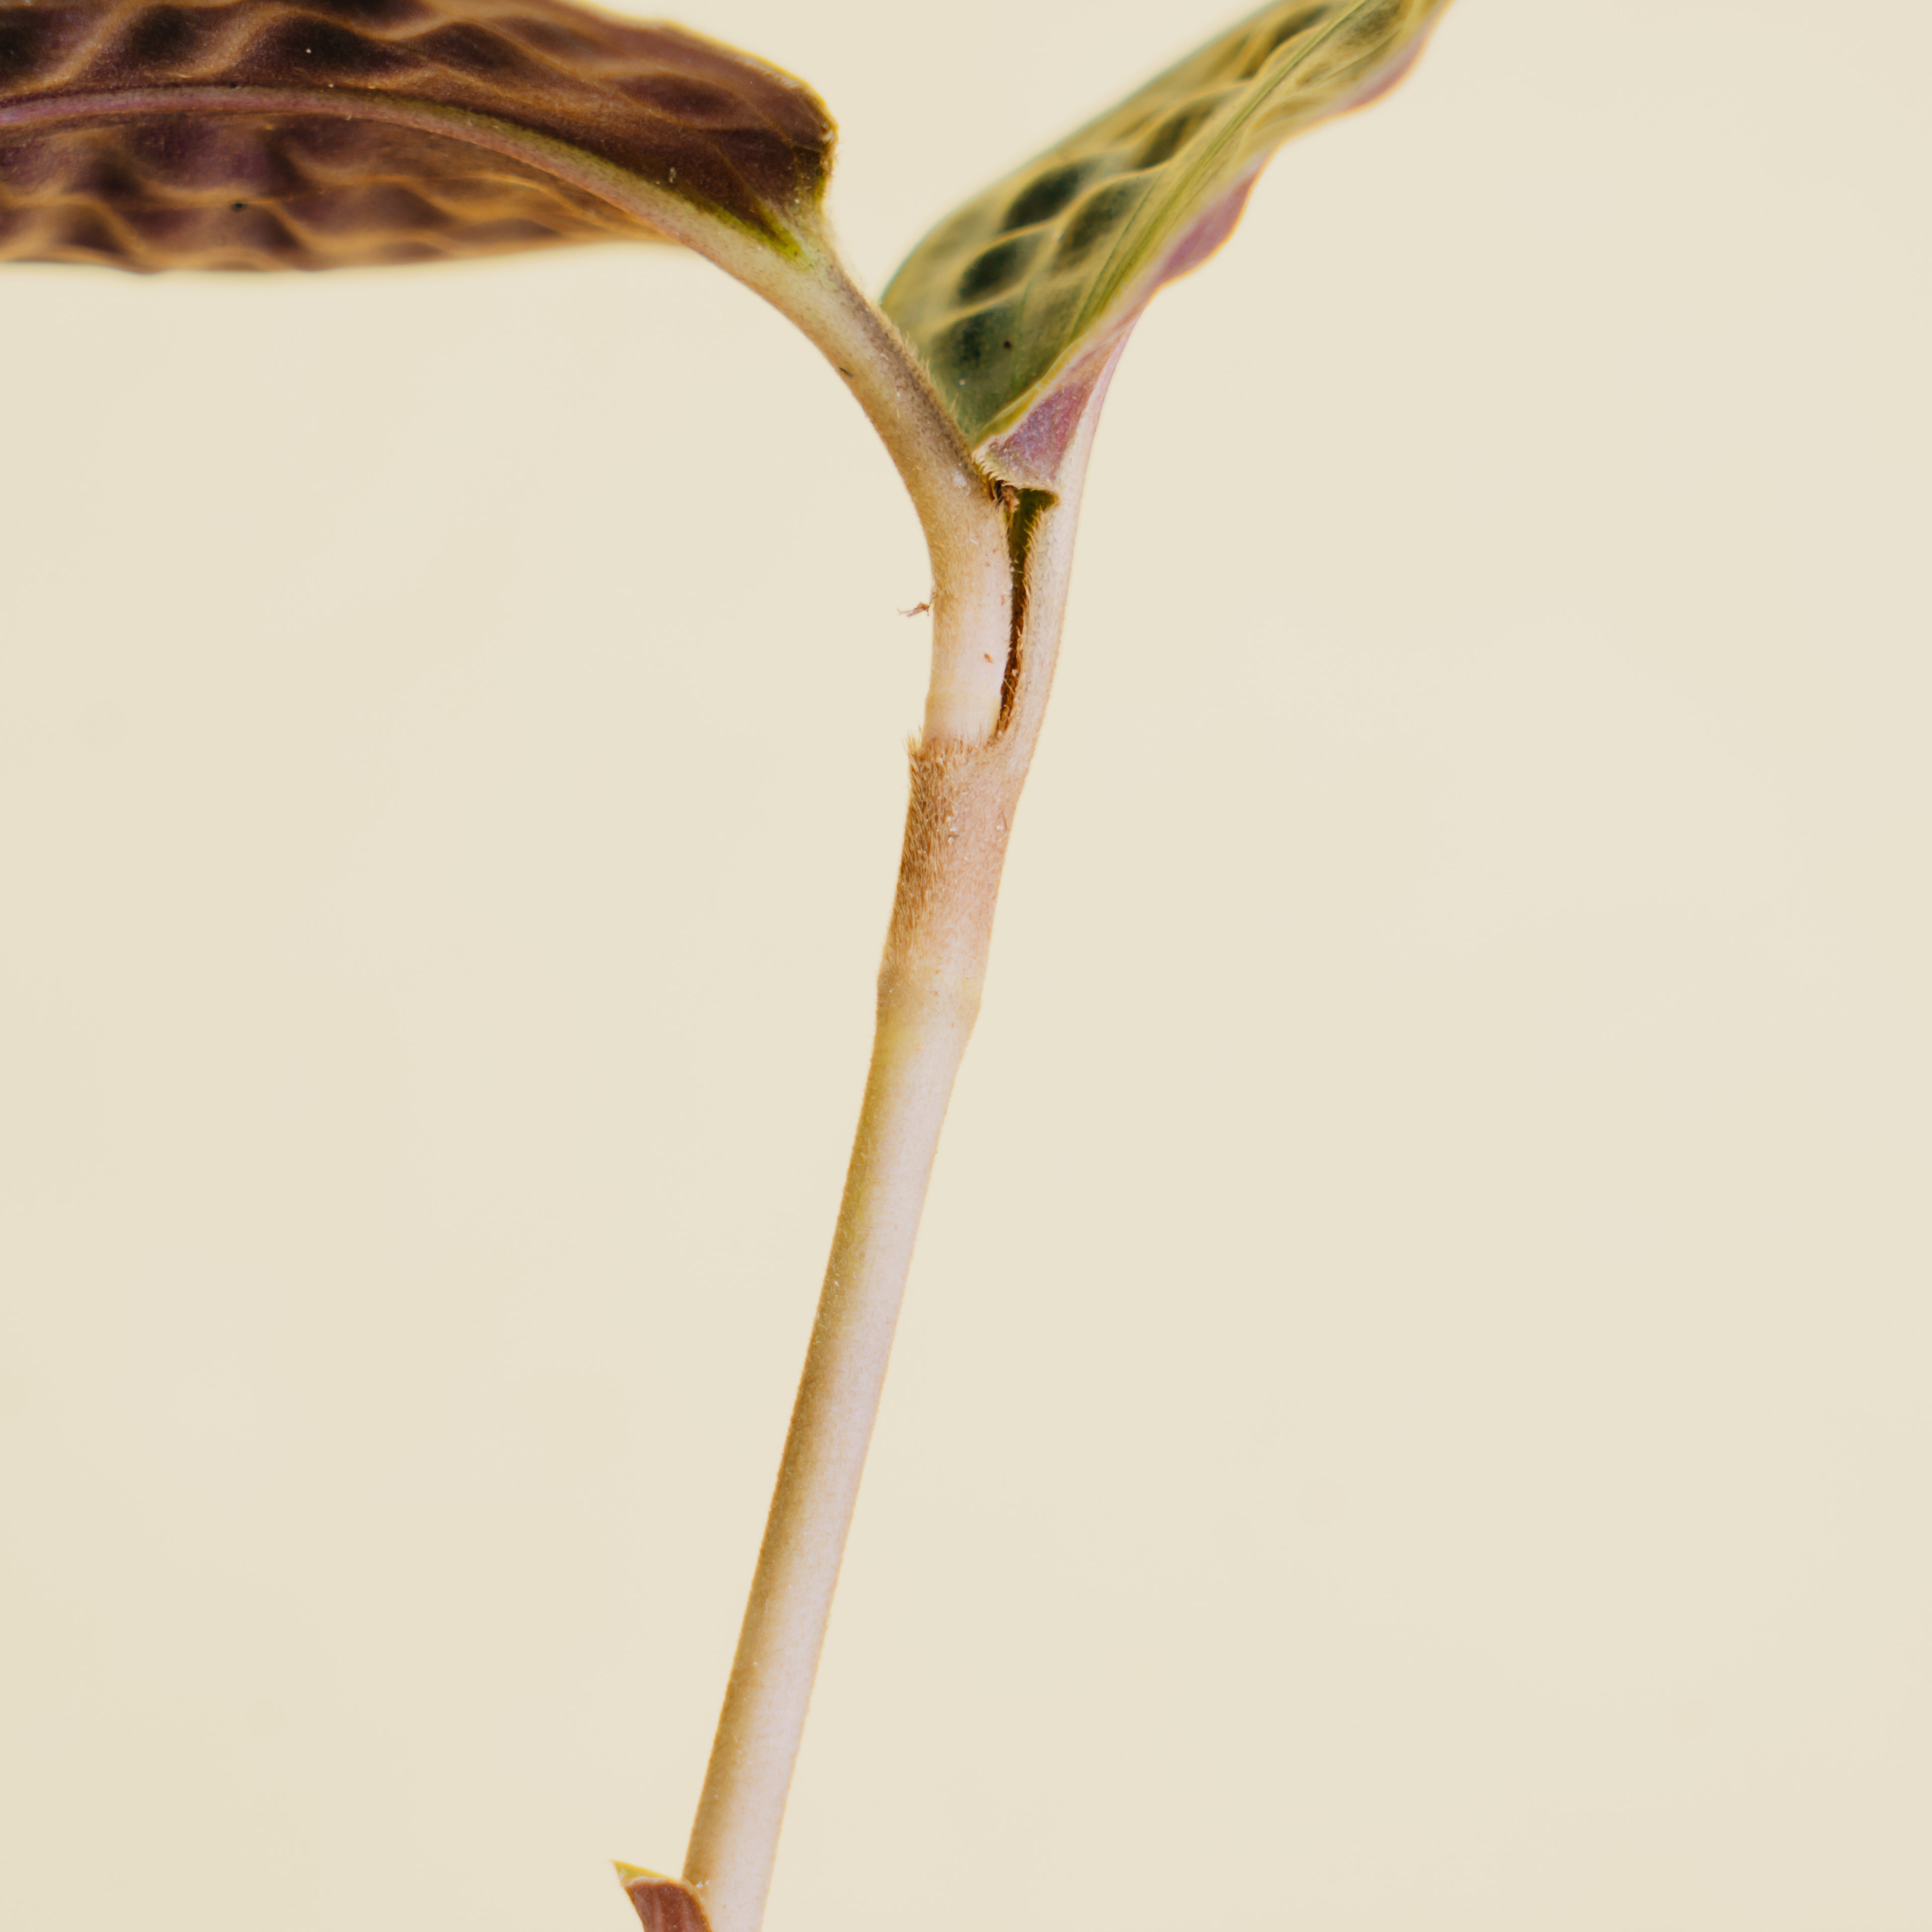 Geogenanthus poeppigii